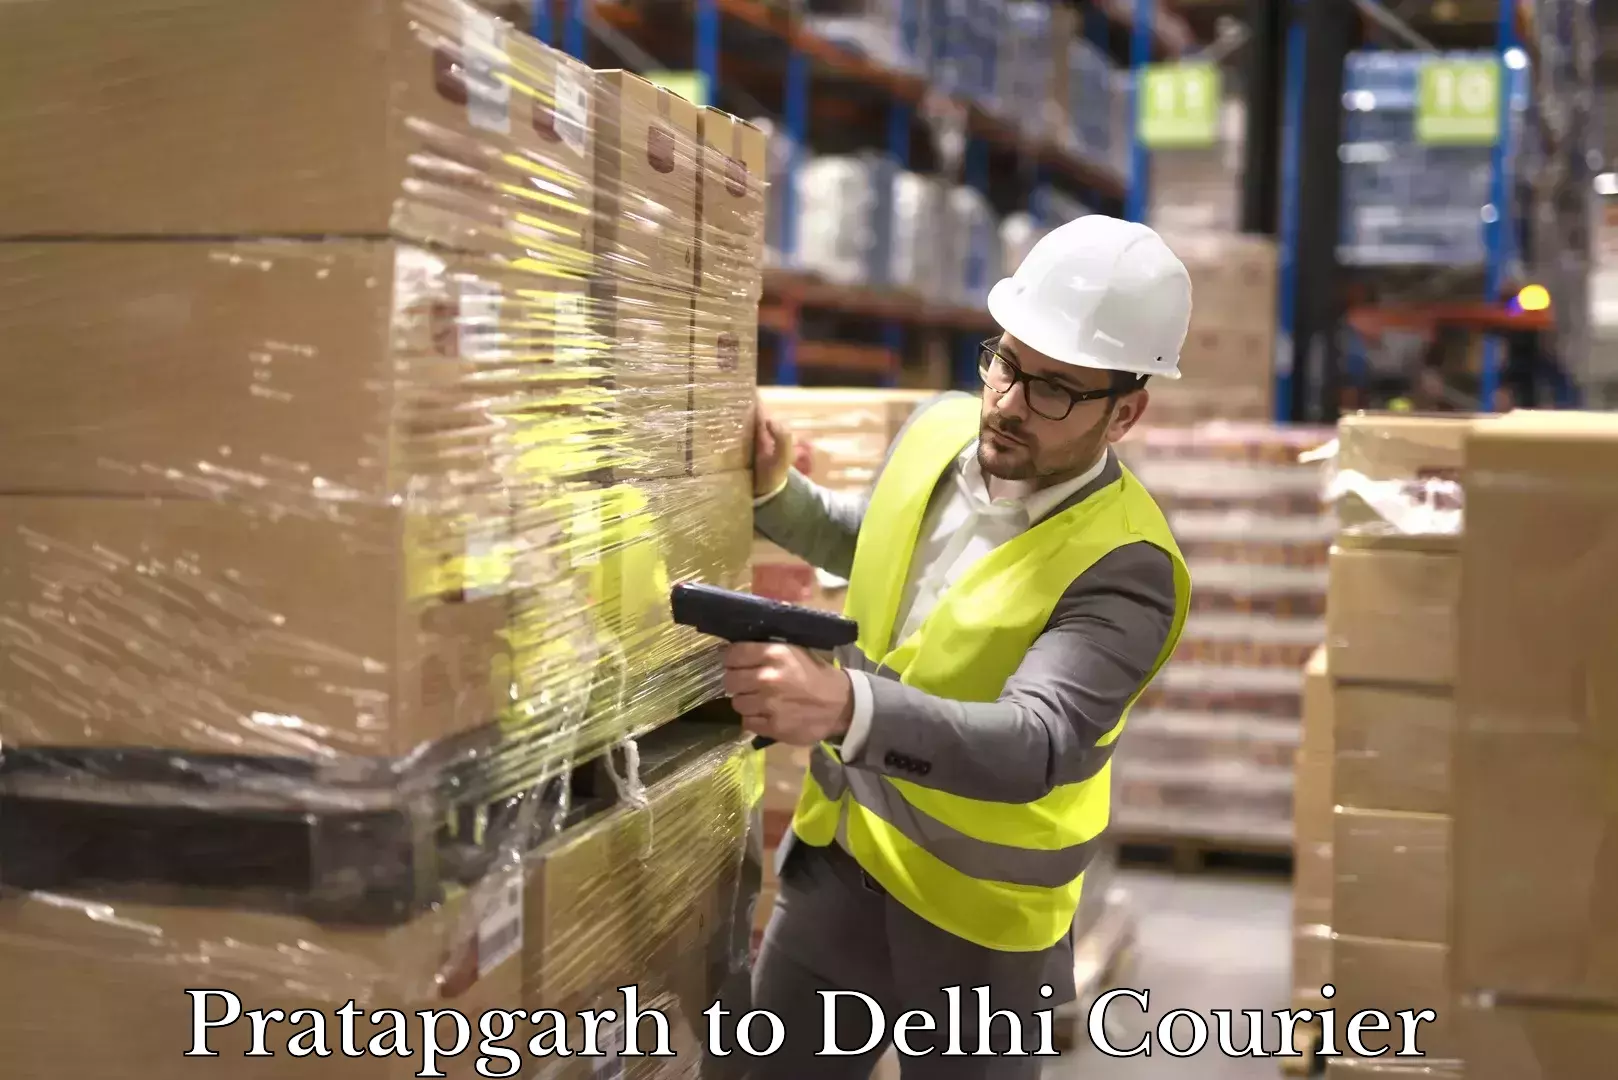 Nationwide courier service Pratapgarh to Delhi